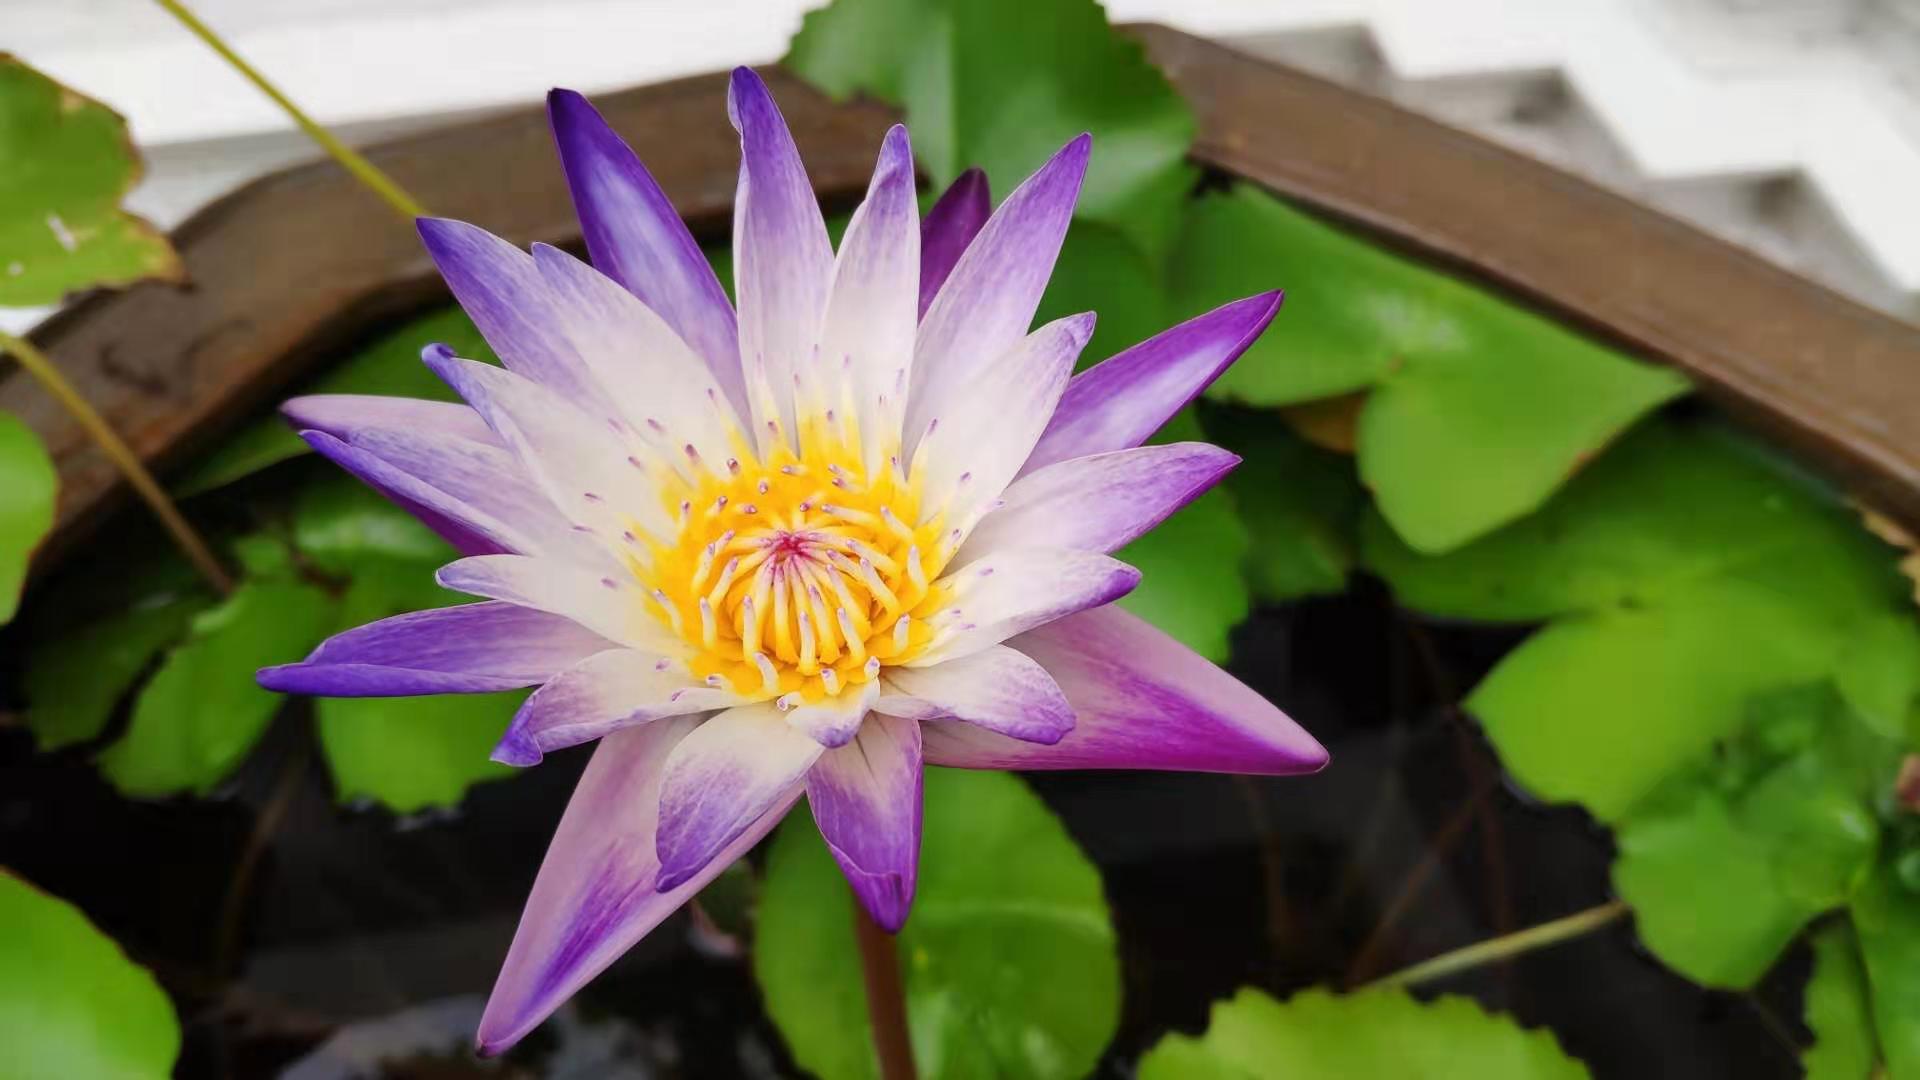 Lotus flower - 02.jpg